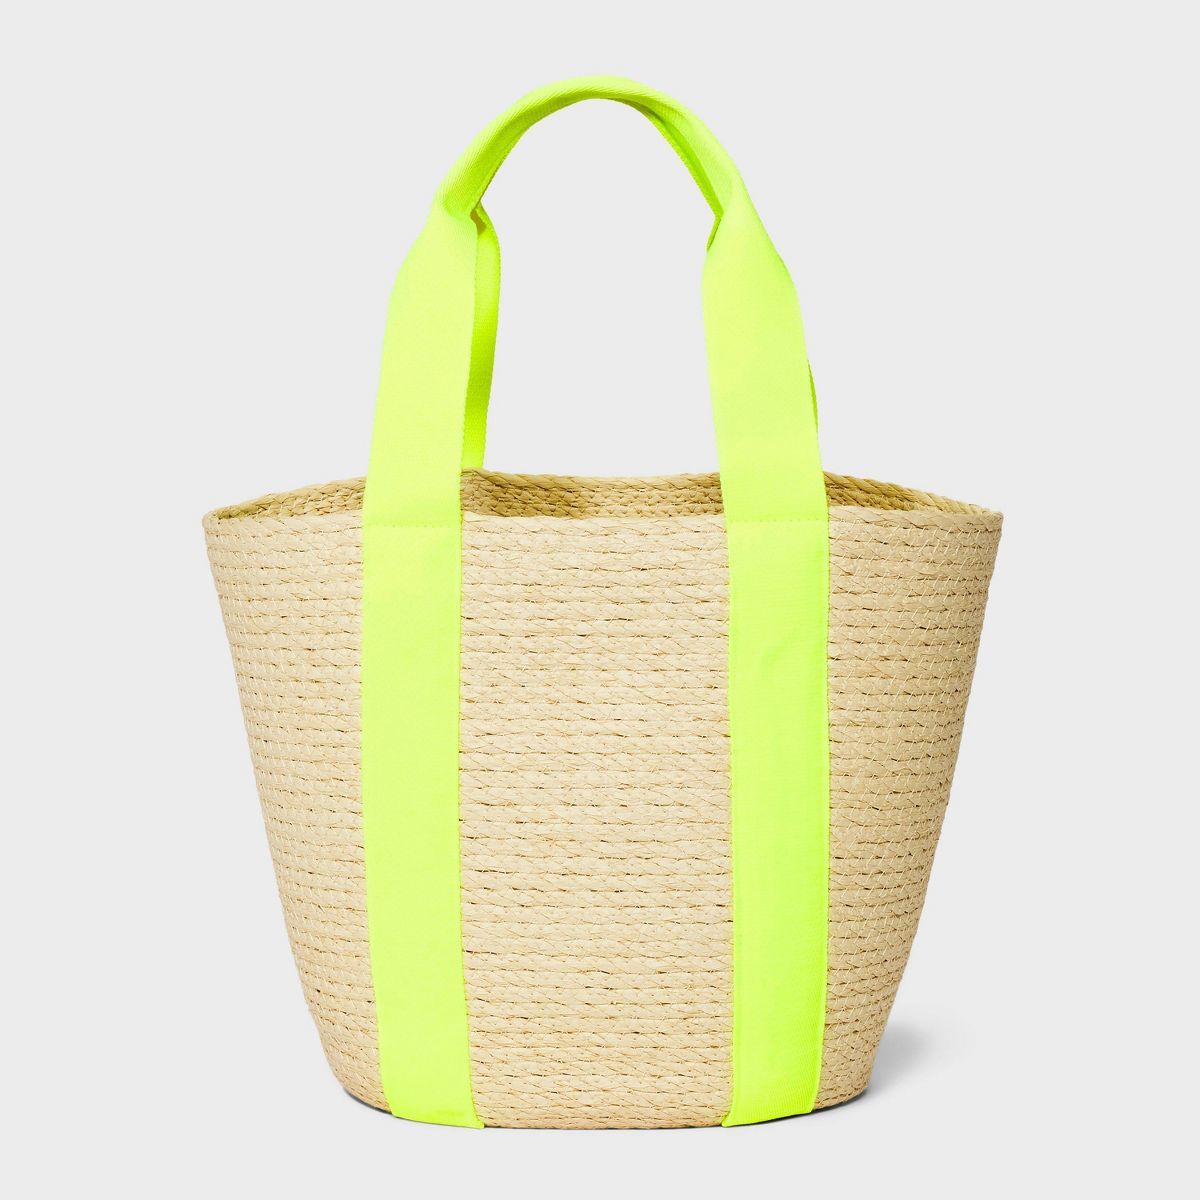 Straw Natural Tote Handbag - A New Day™ Yellow | Target